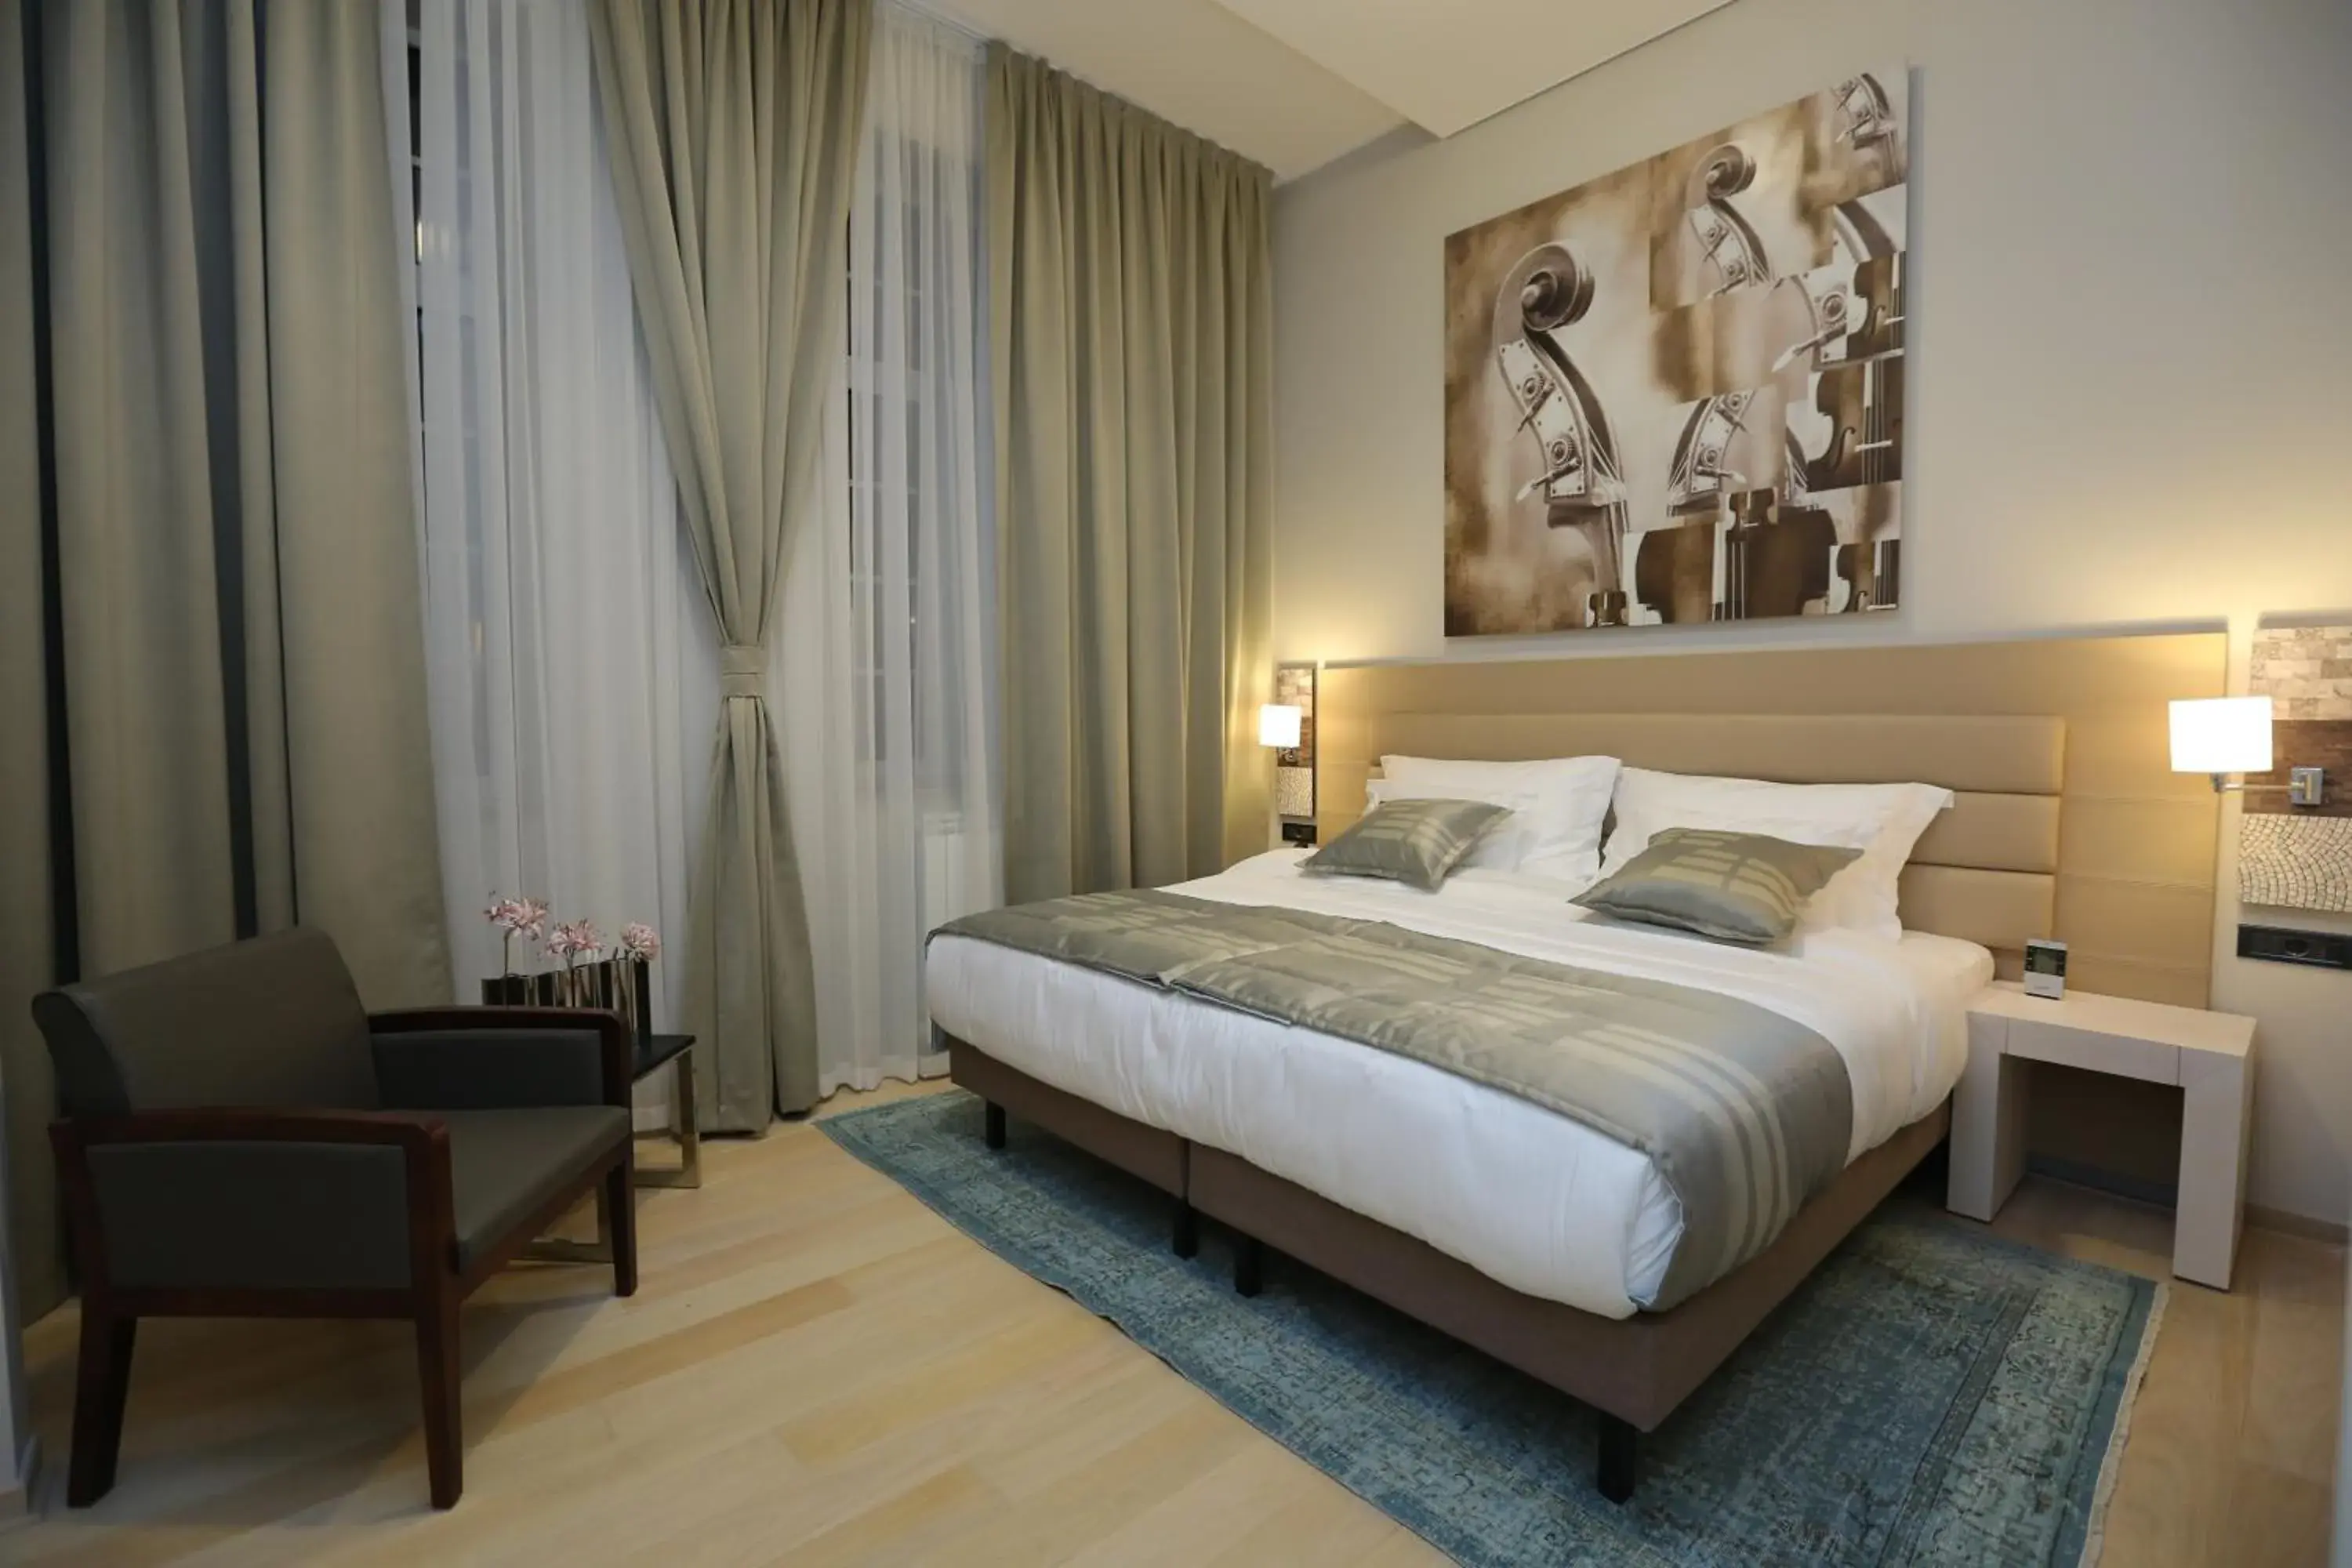 Bedroom, Room Photo in Zepter Hotel